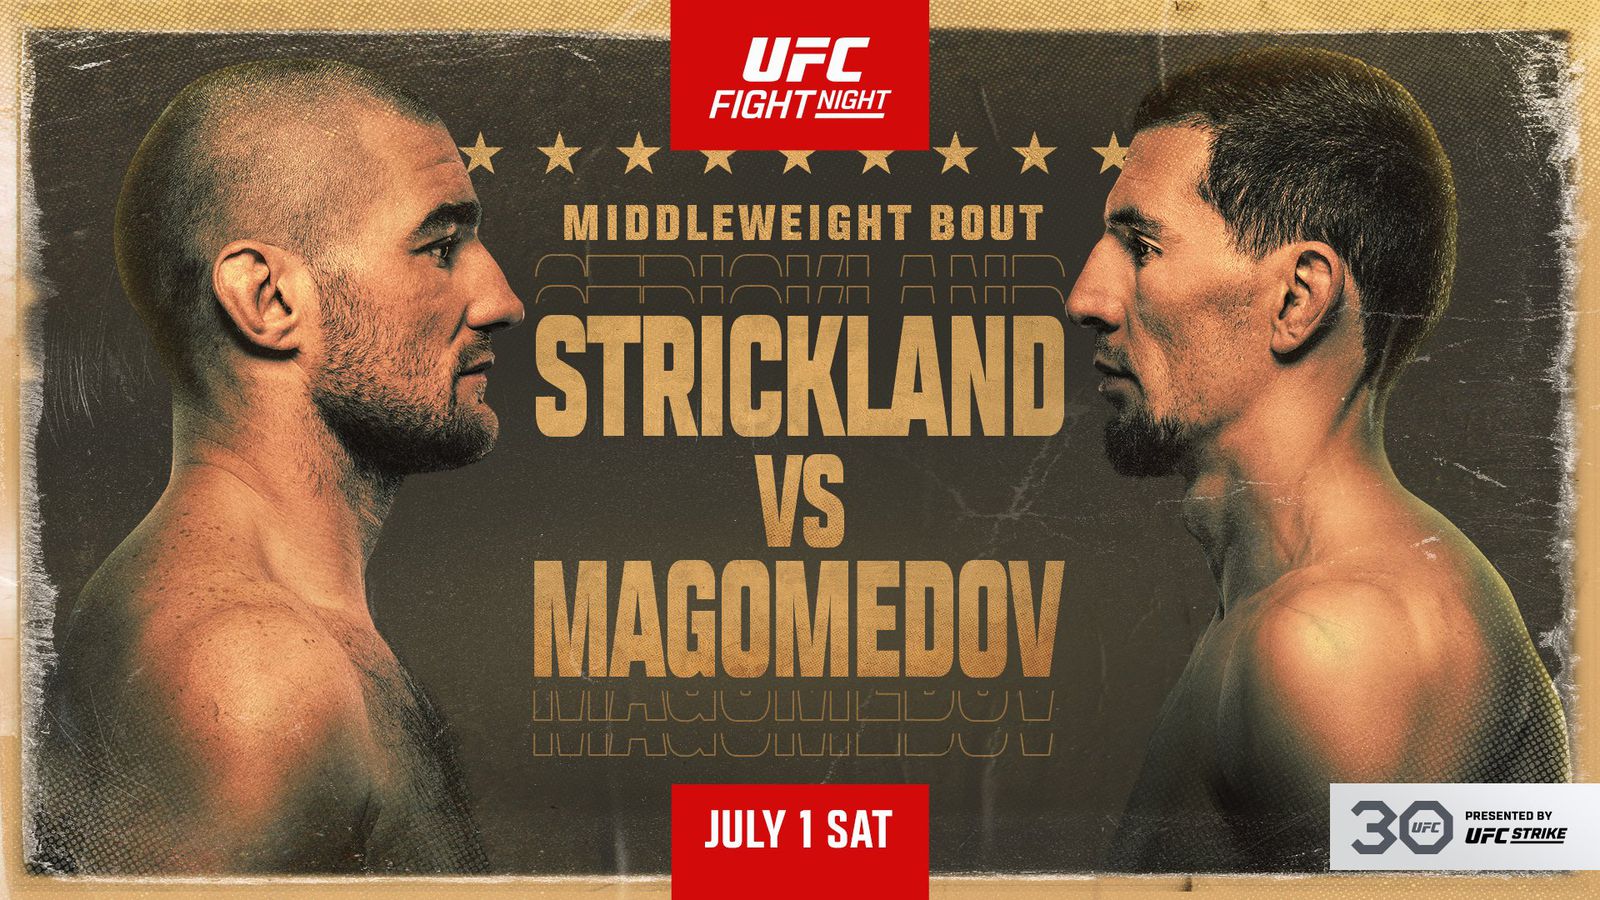 Strickland vs Magomedov poster